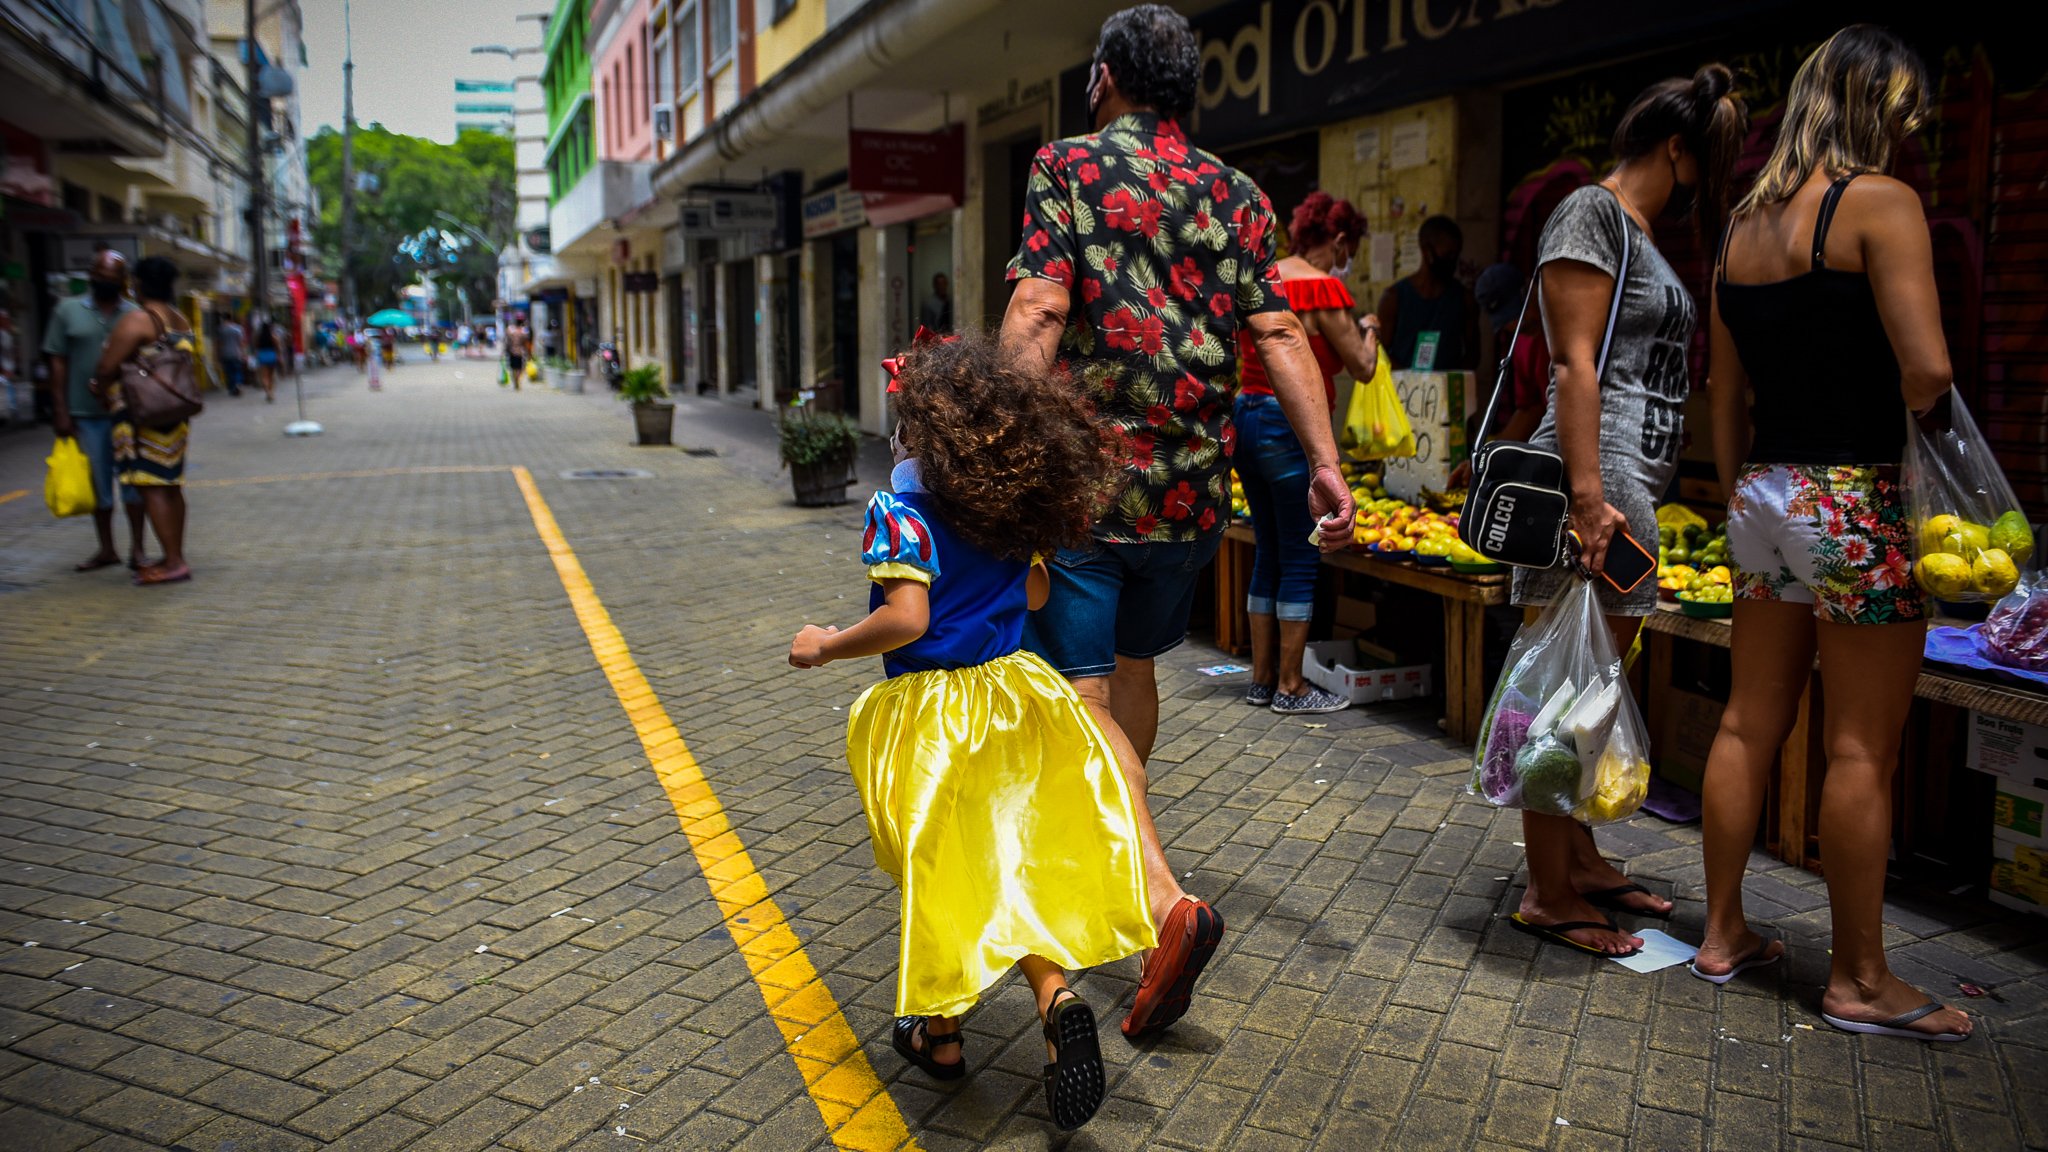 Na fantasia da menina, um pequeno vestígio da maior festa popular do Brasil